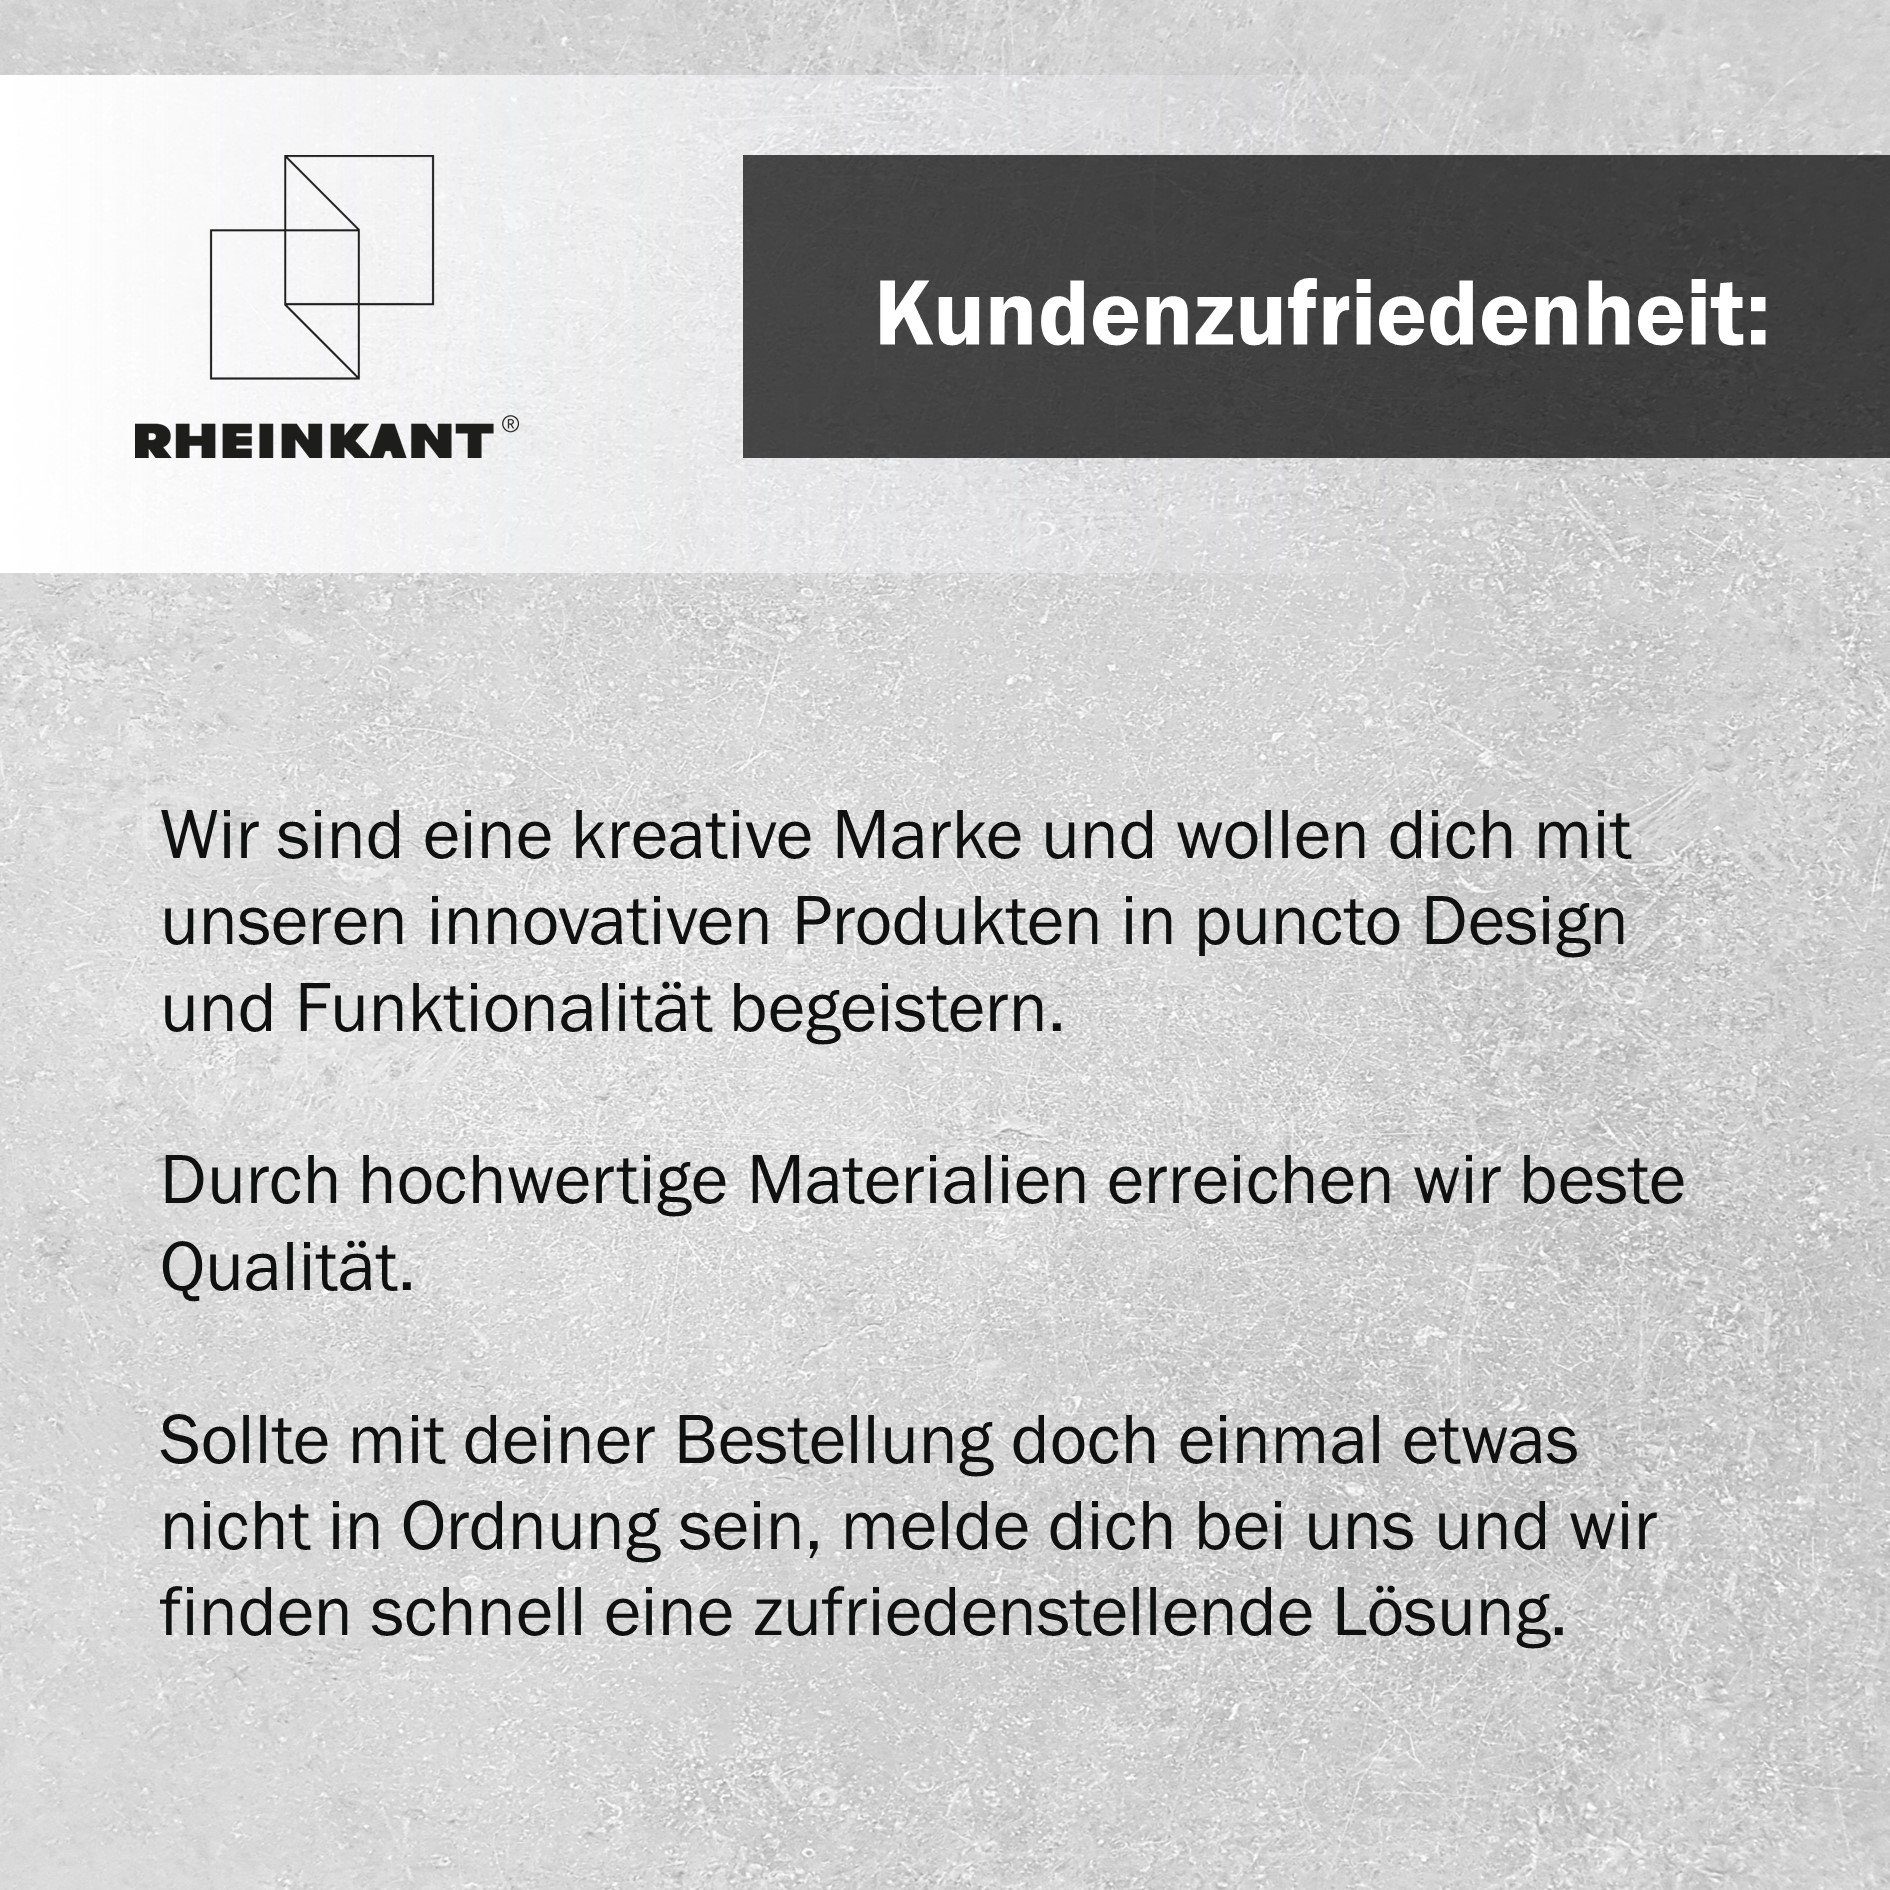 Wandregal RHEINKANT Made Germany, Germany, Stahl. in HEIN, Bücherregal Made pulverbeschichtetem 98 cm, hochwertigem Weiß in Aus Schweberegal,